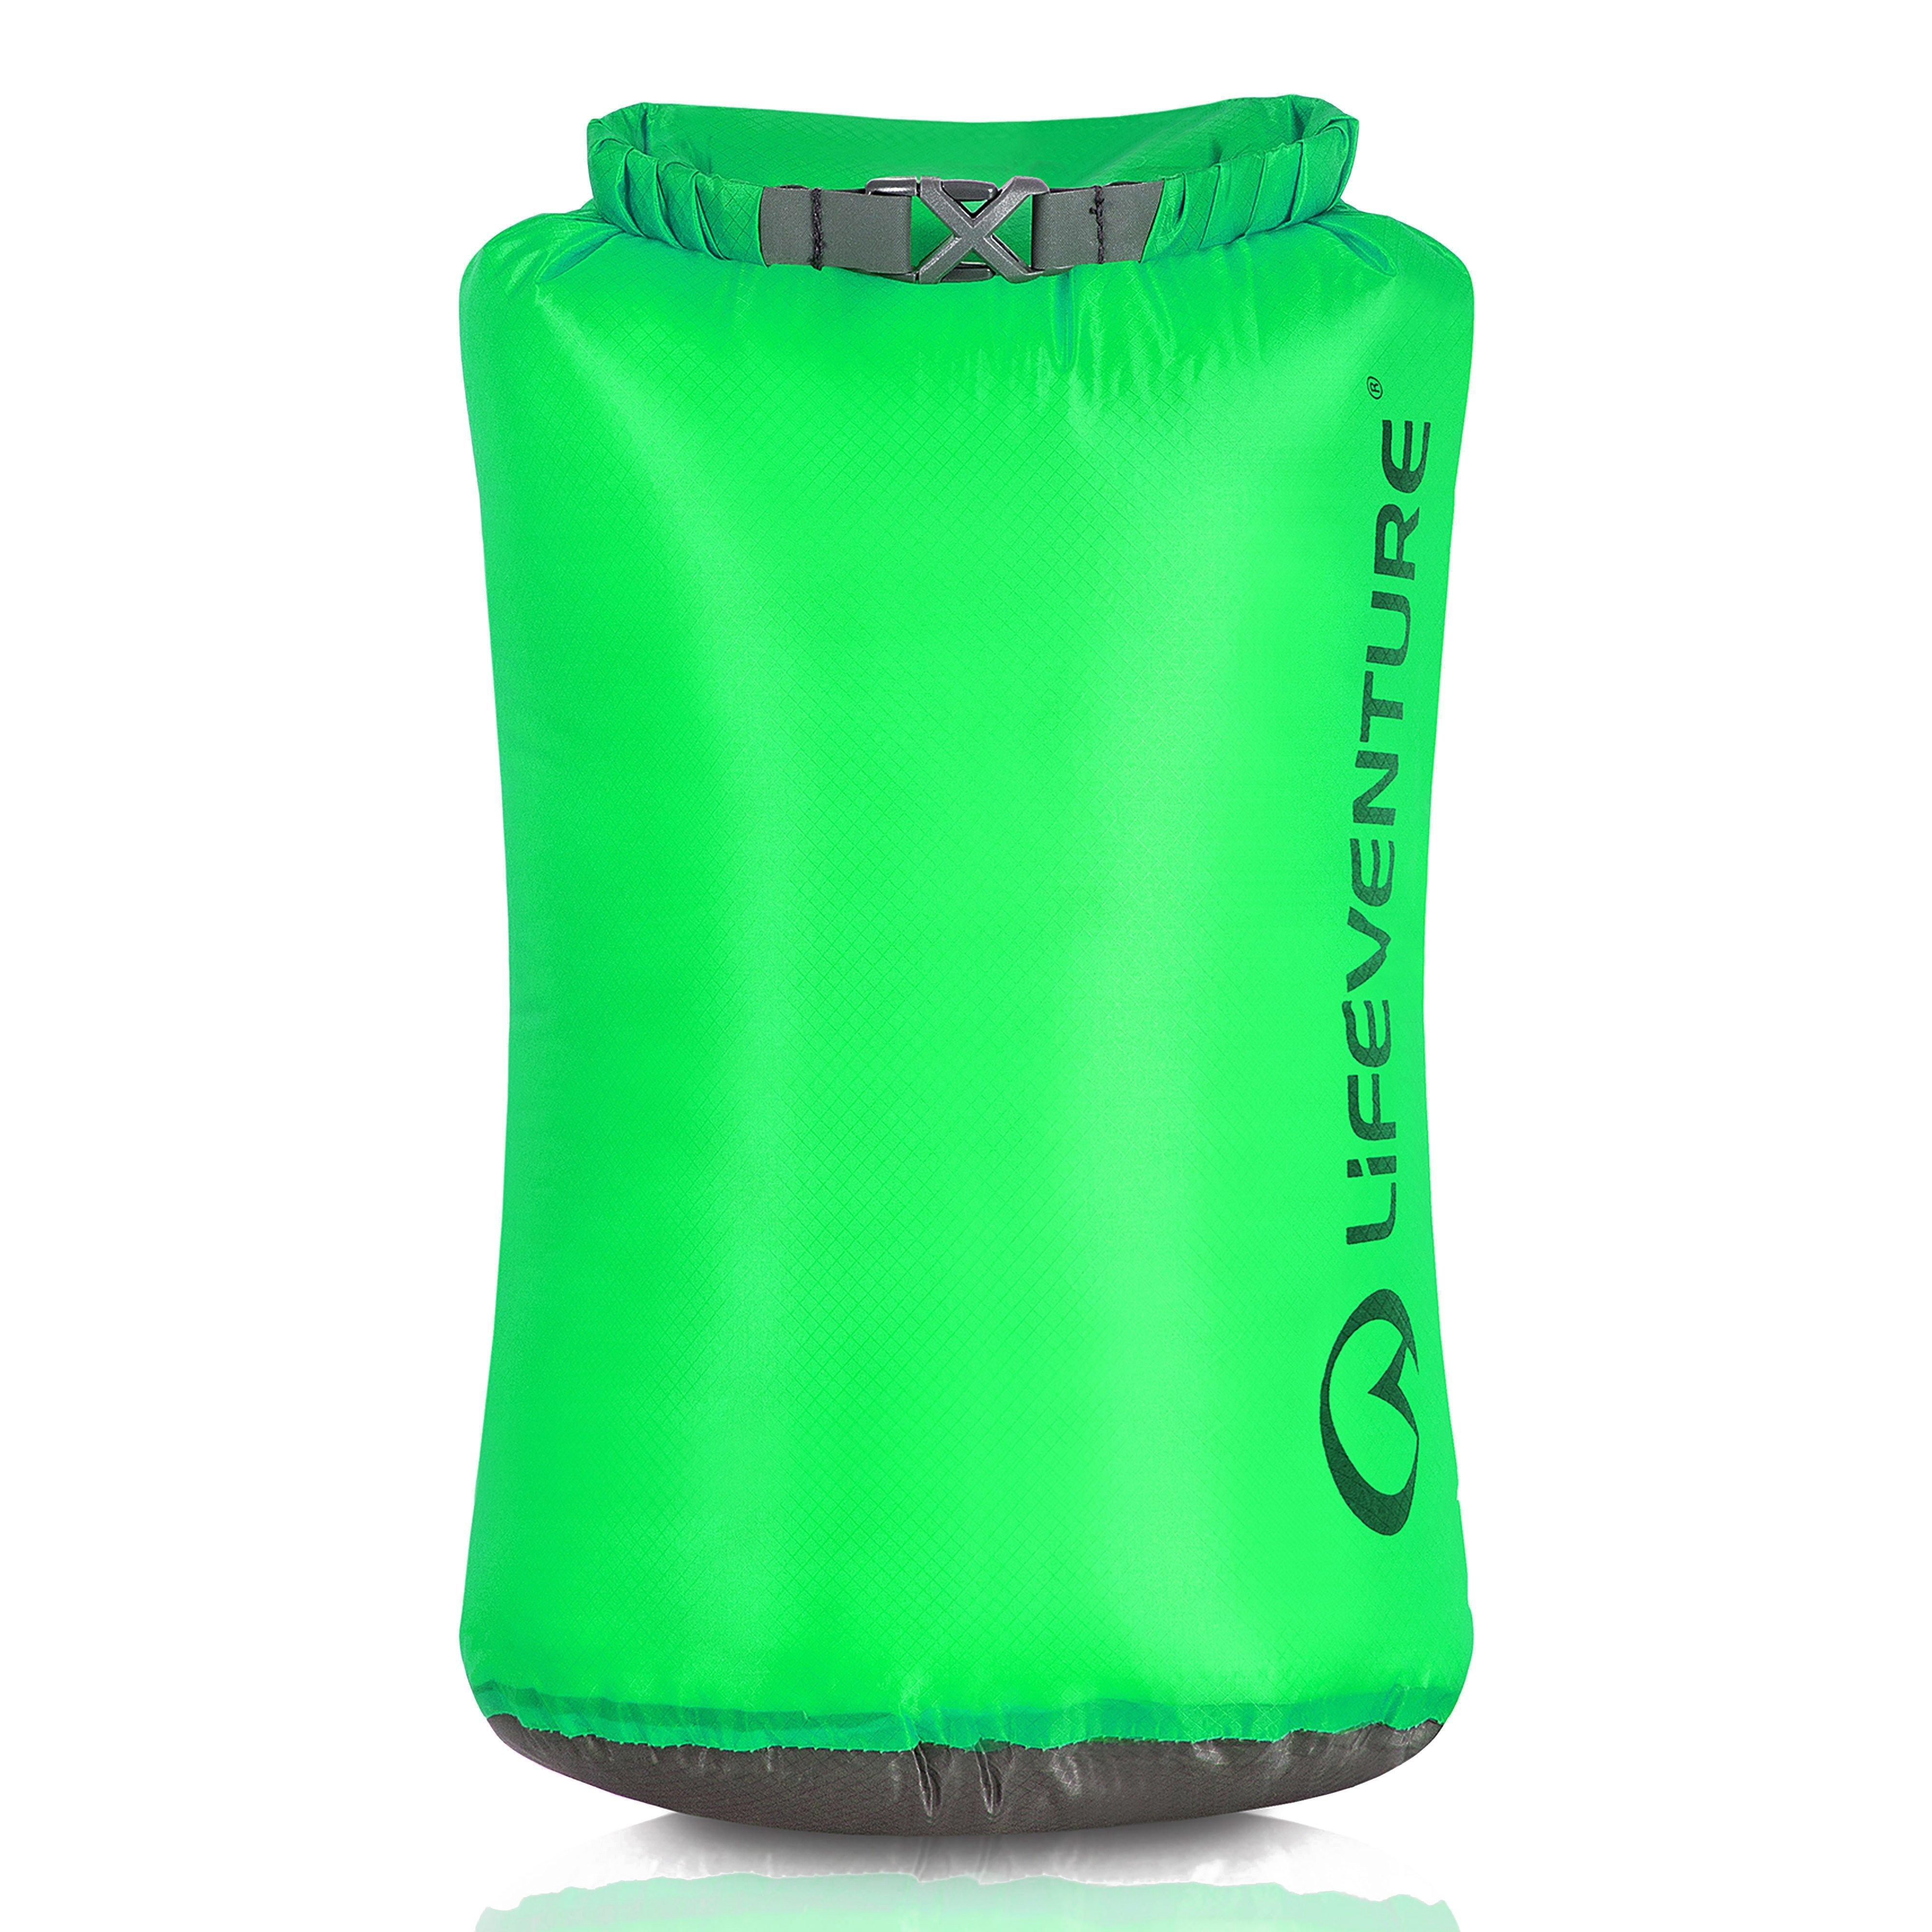 Lifeventure Ultralight 10l Dry Bag - Green/10l  Green/10l